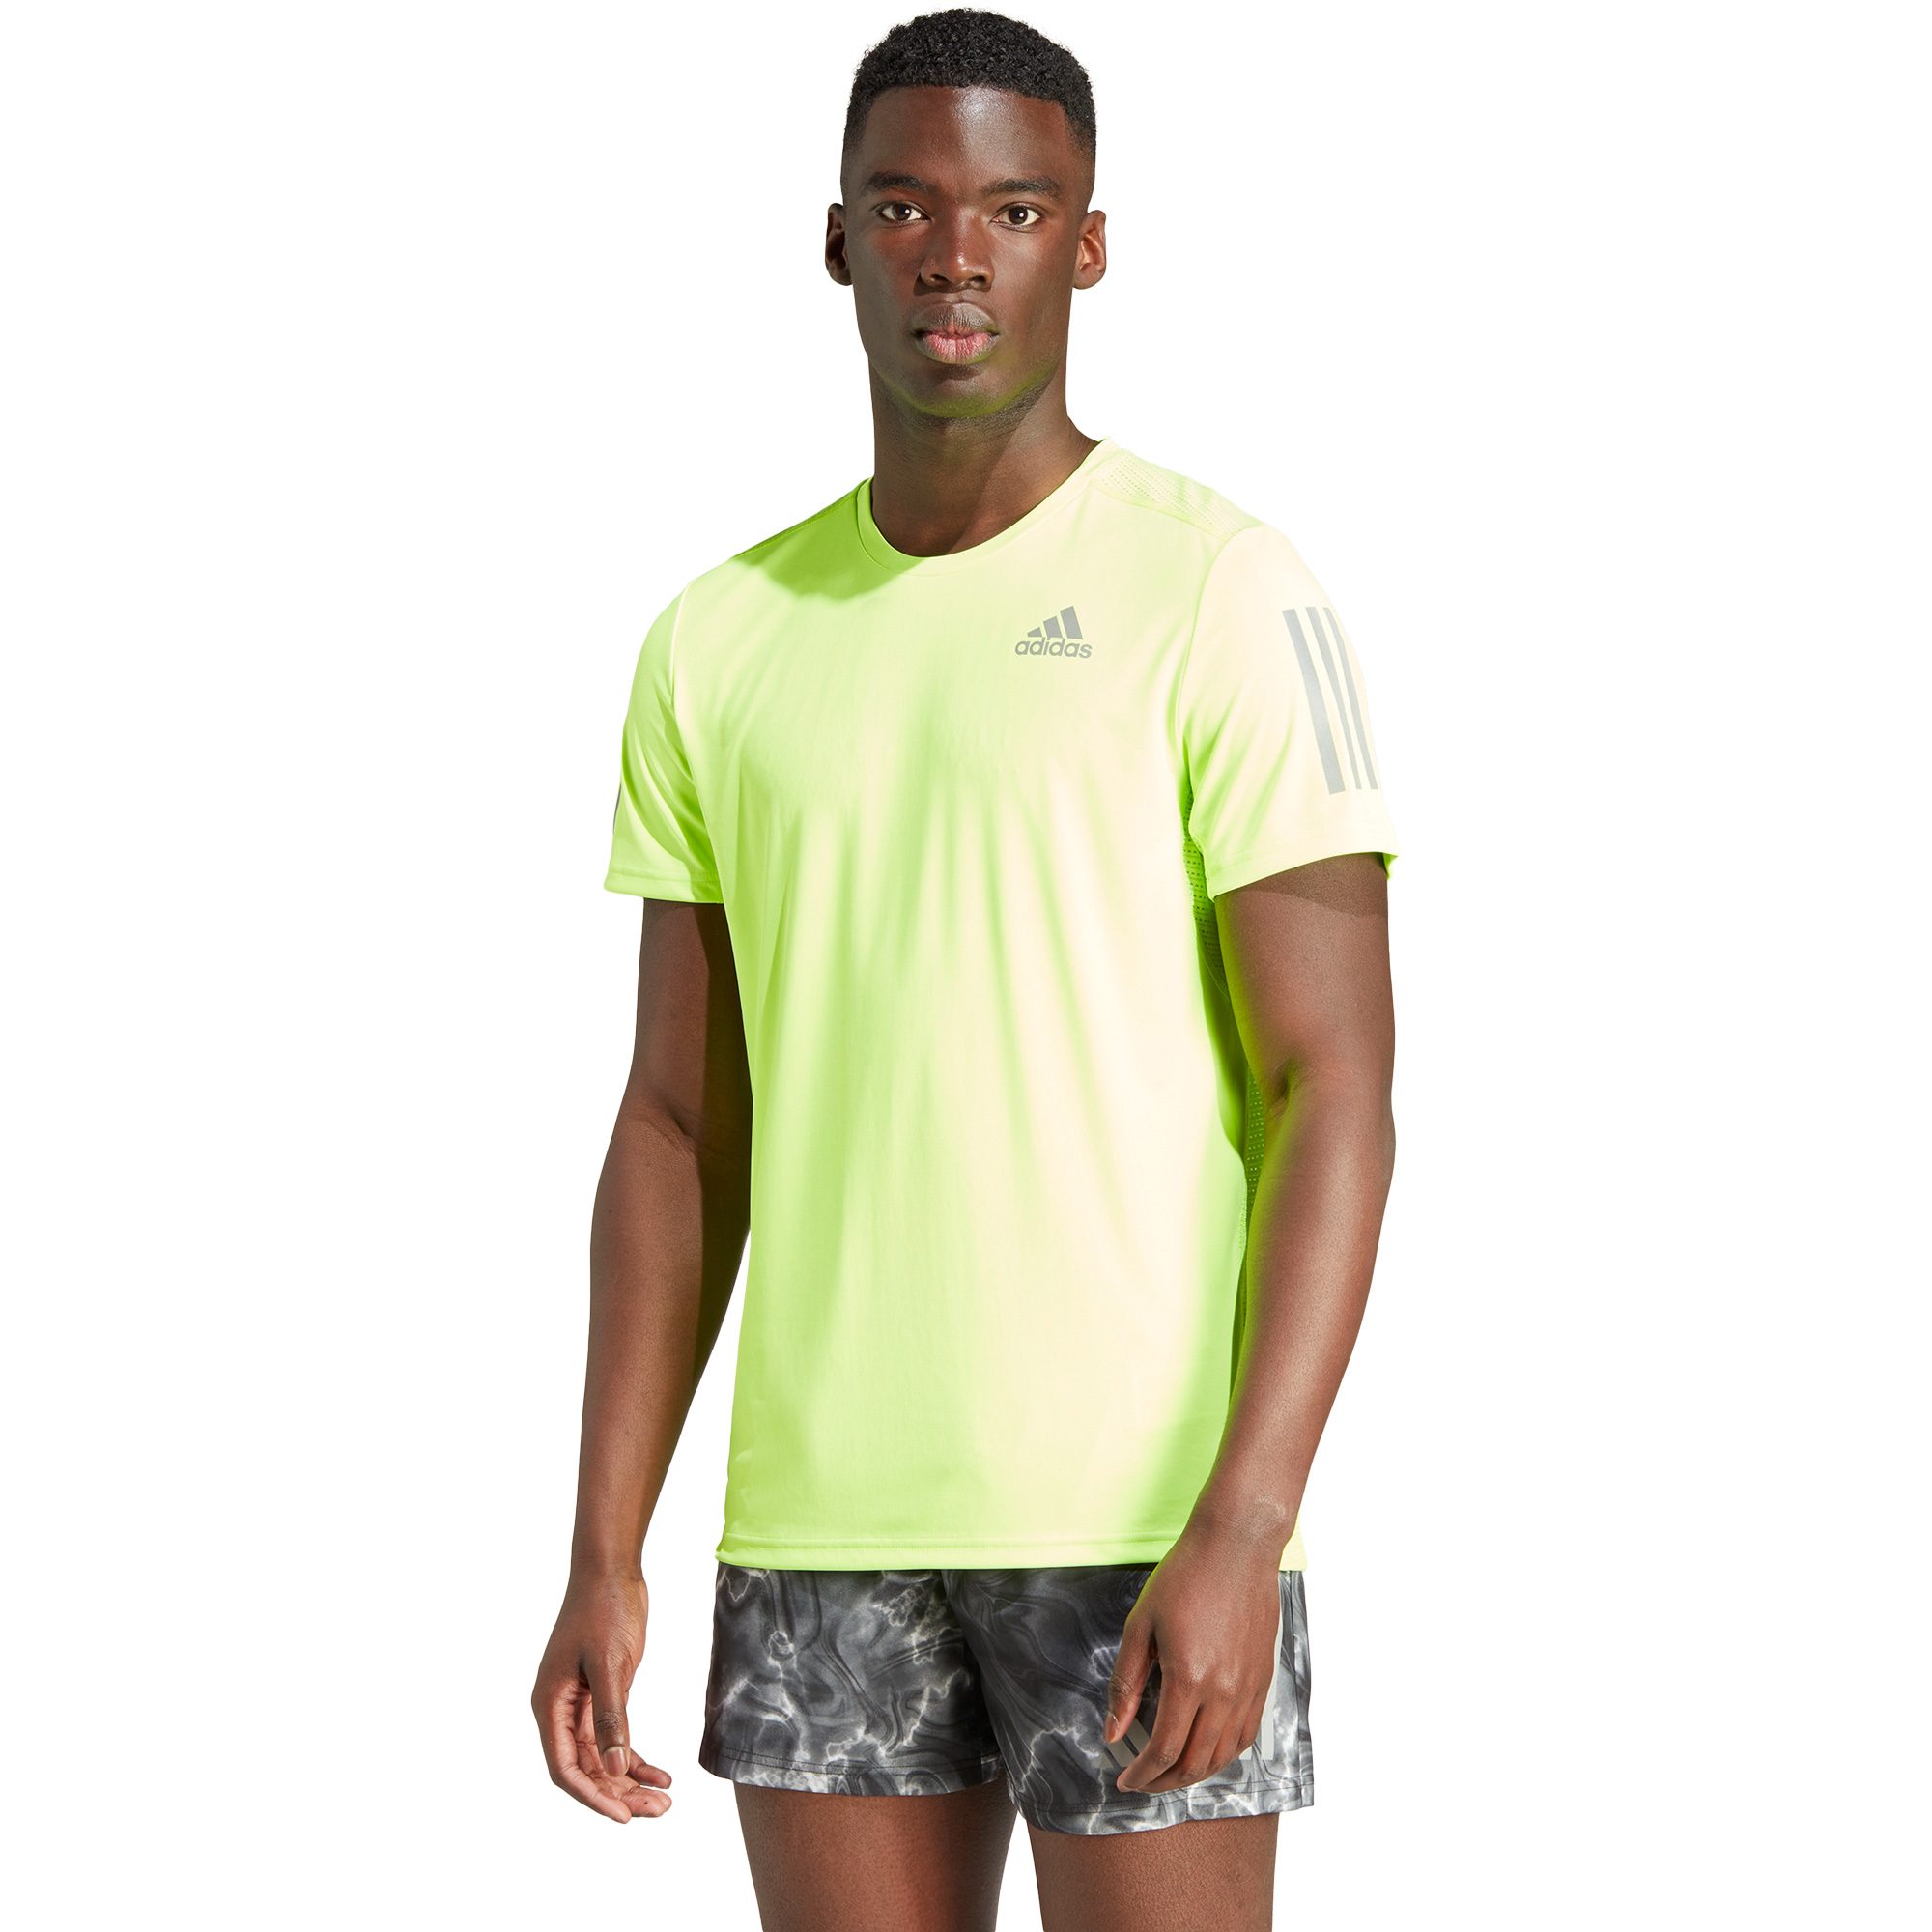 Run the T-Shirt at - Own lemon Bittl adidas Sport lucid Shop Men